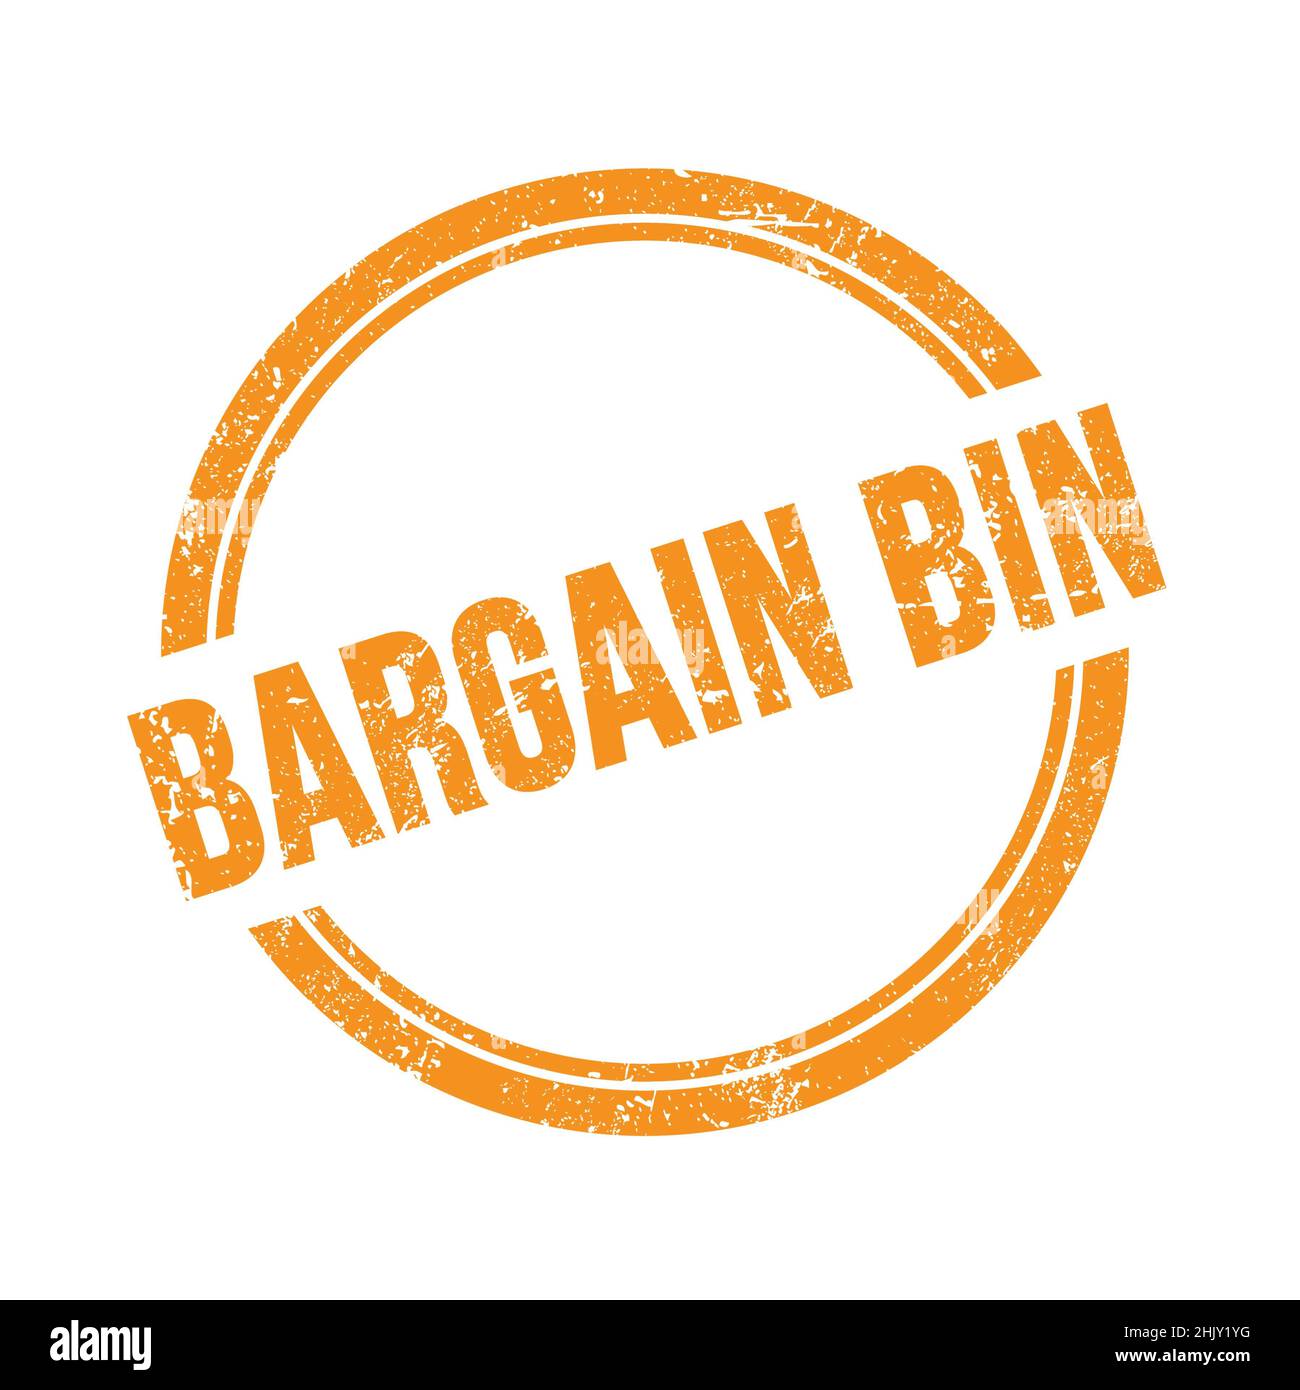 BARGAIN BIN text written on orange grungy vintage round stamp. Stock Photo